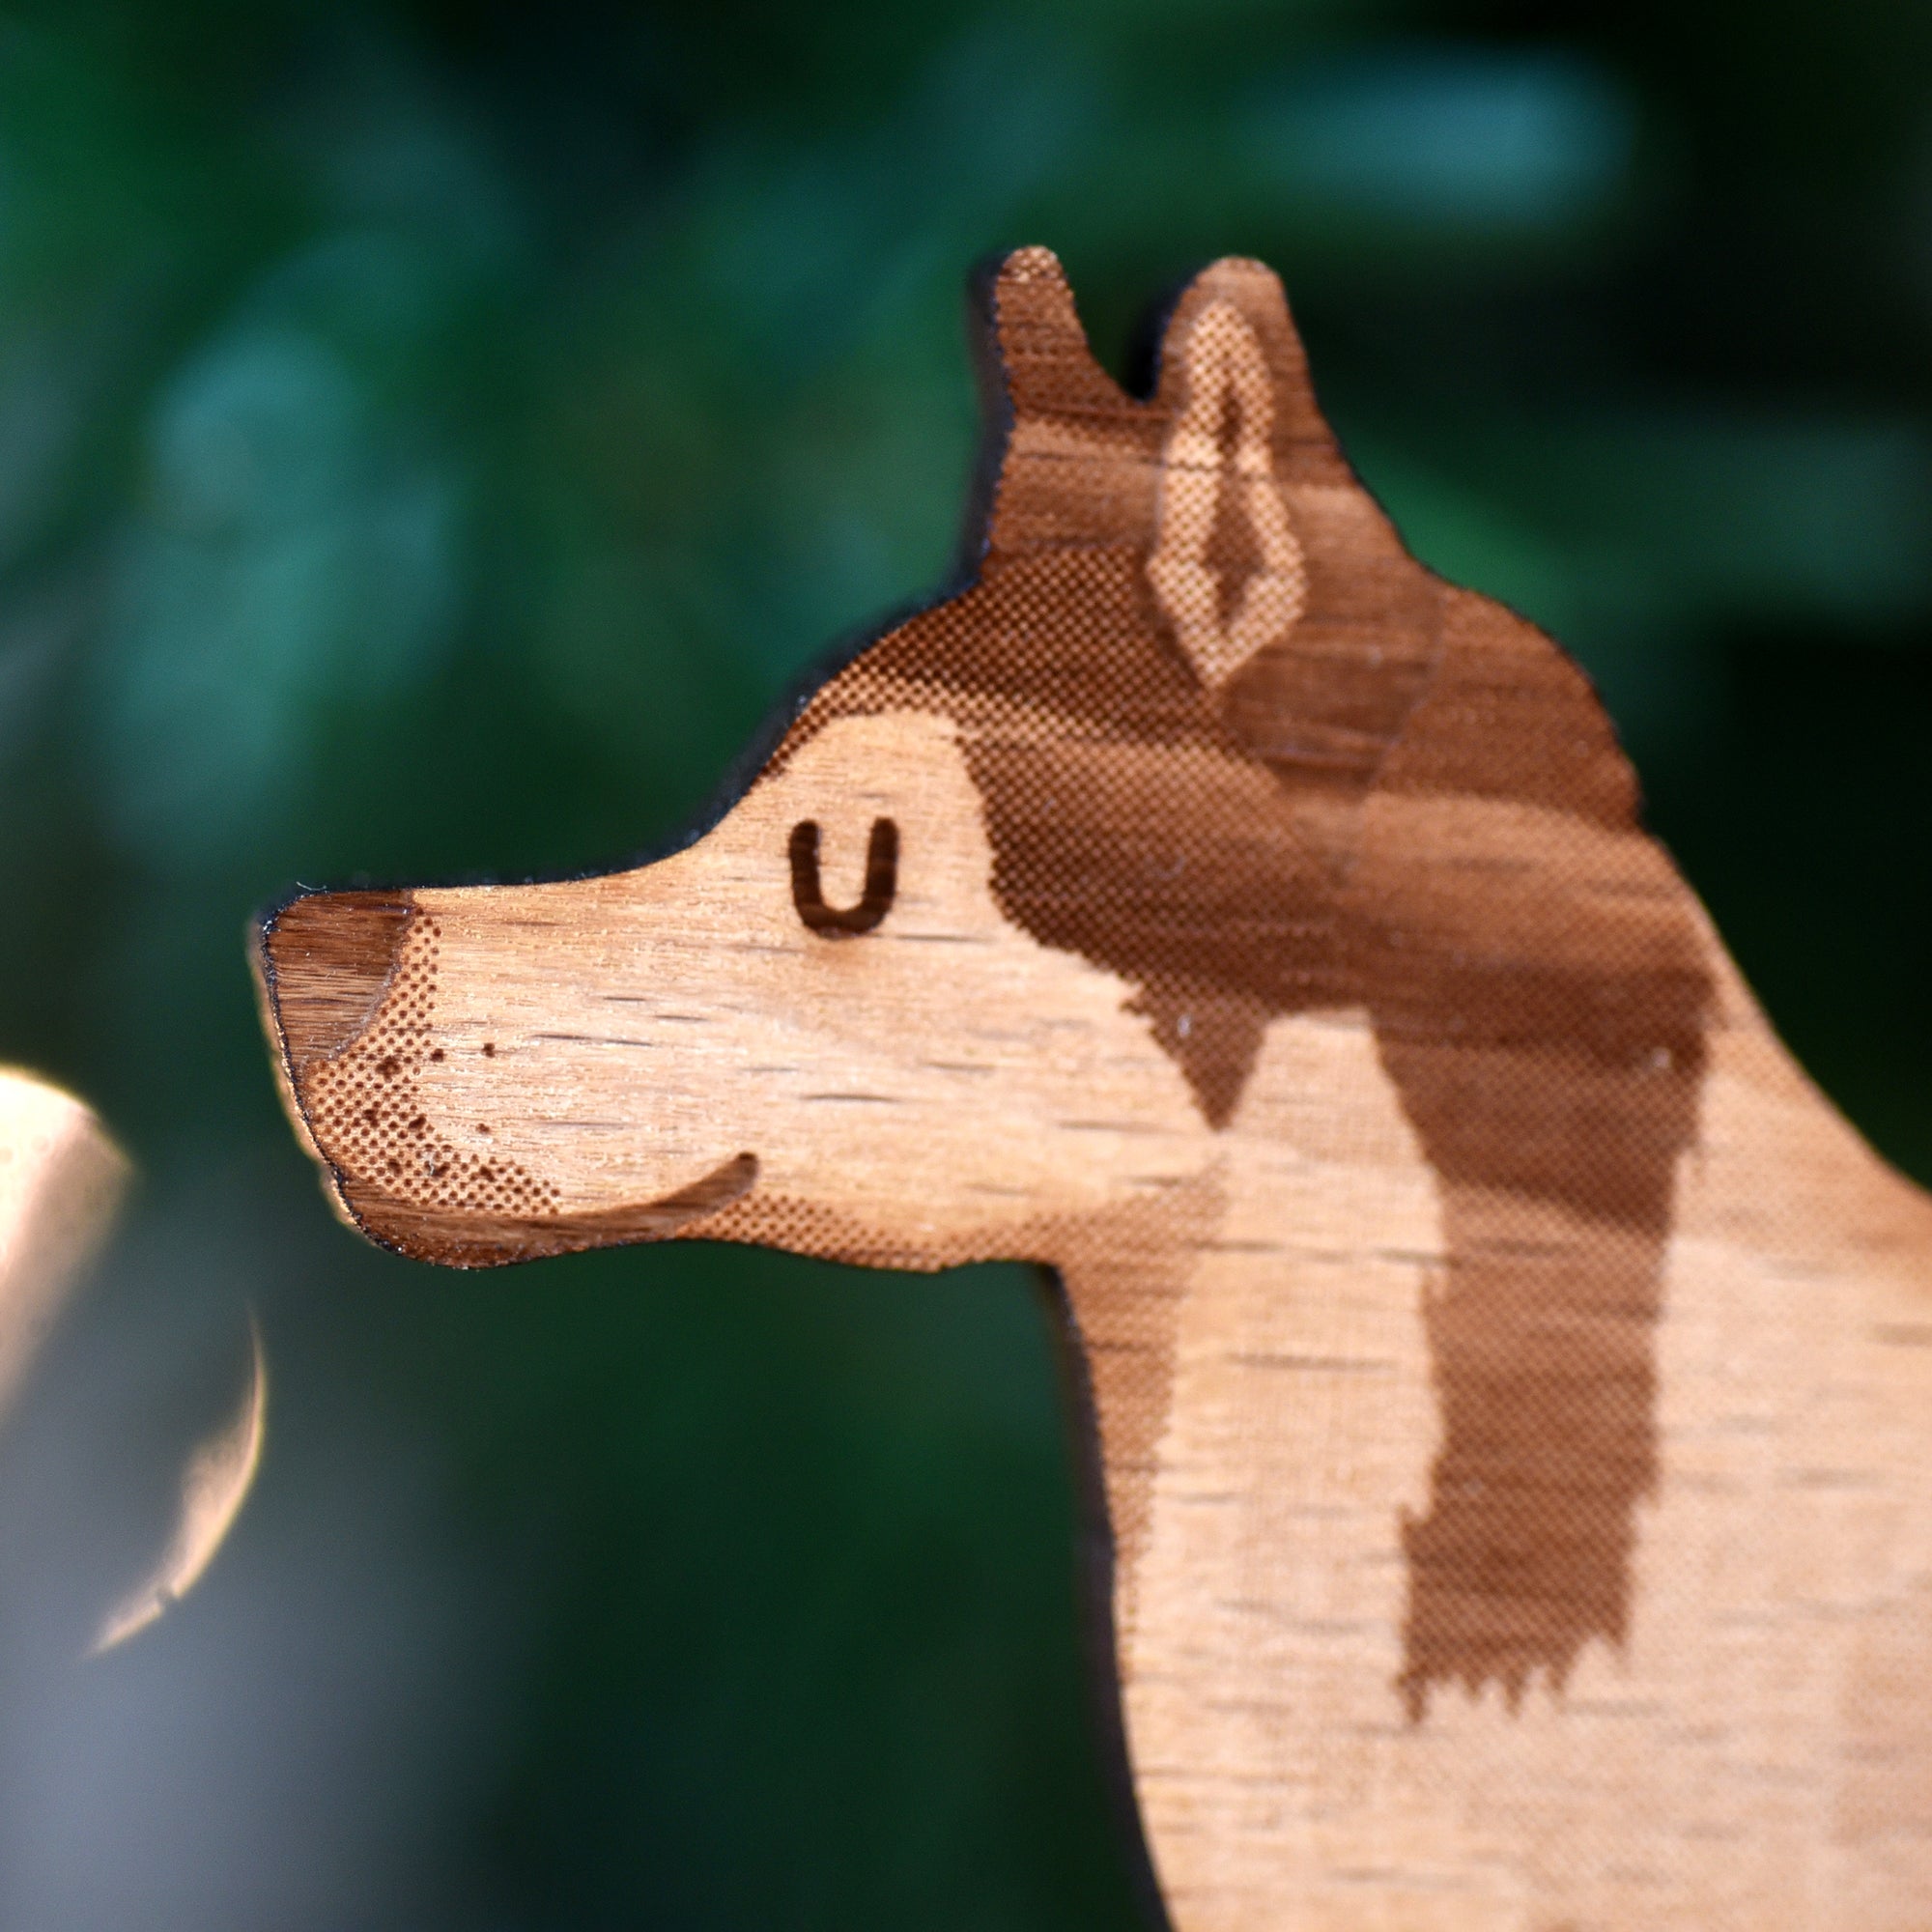 Dog Christmas Decoration - Husky - Solid Wood